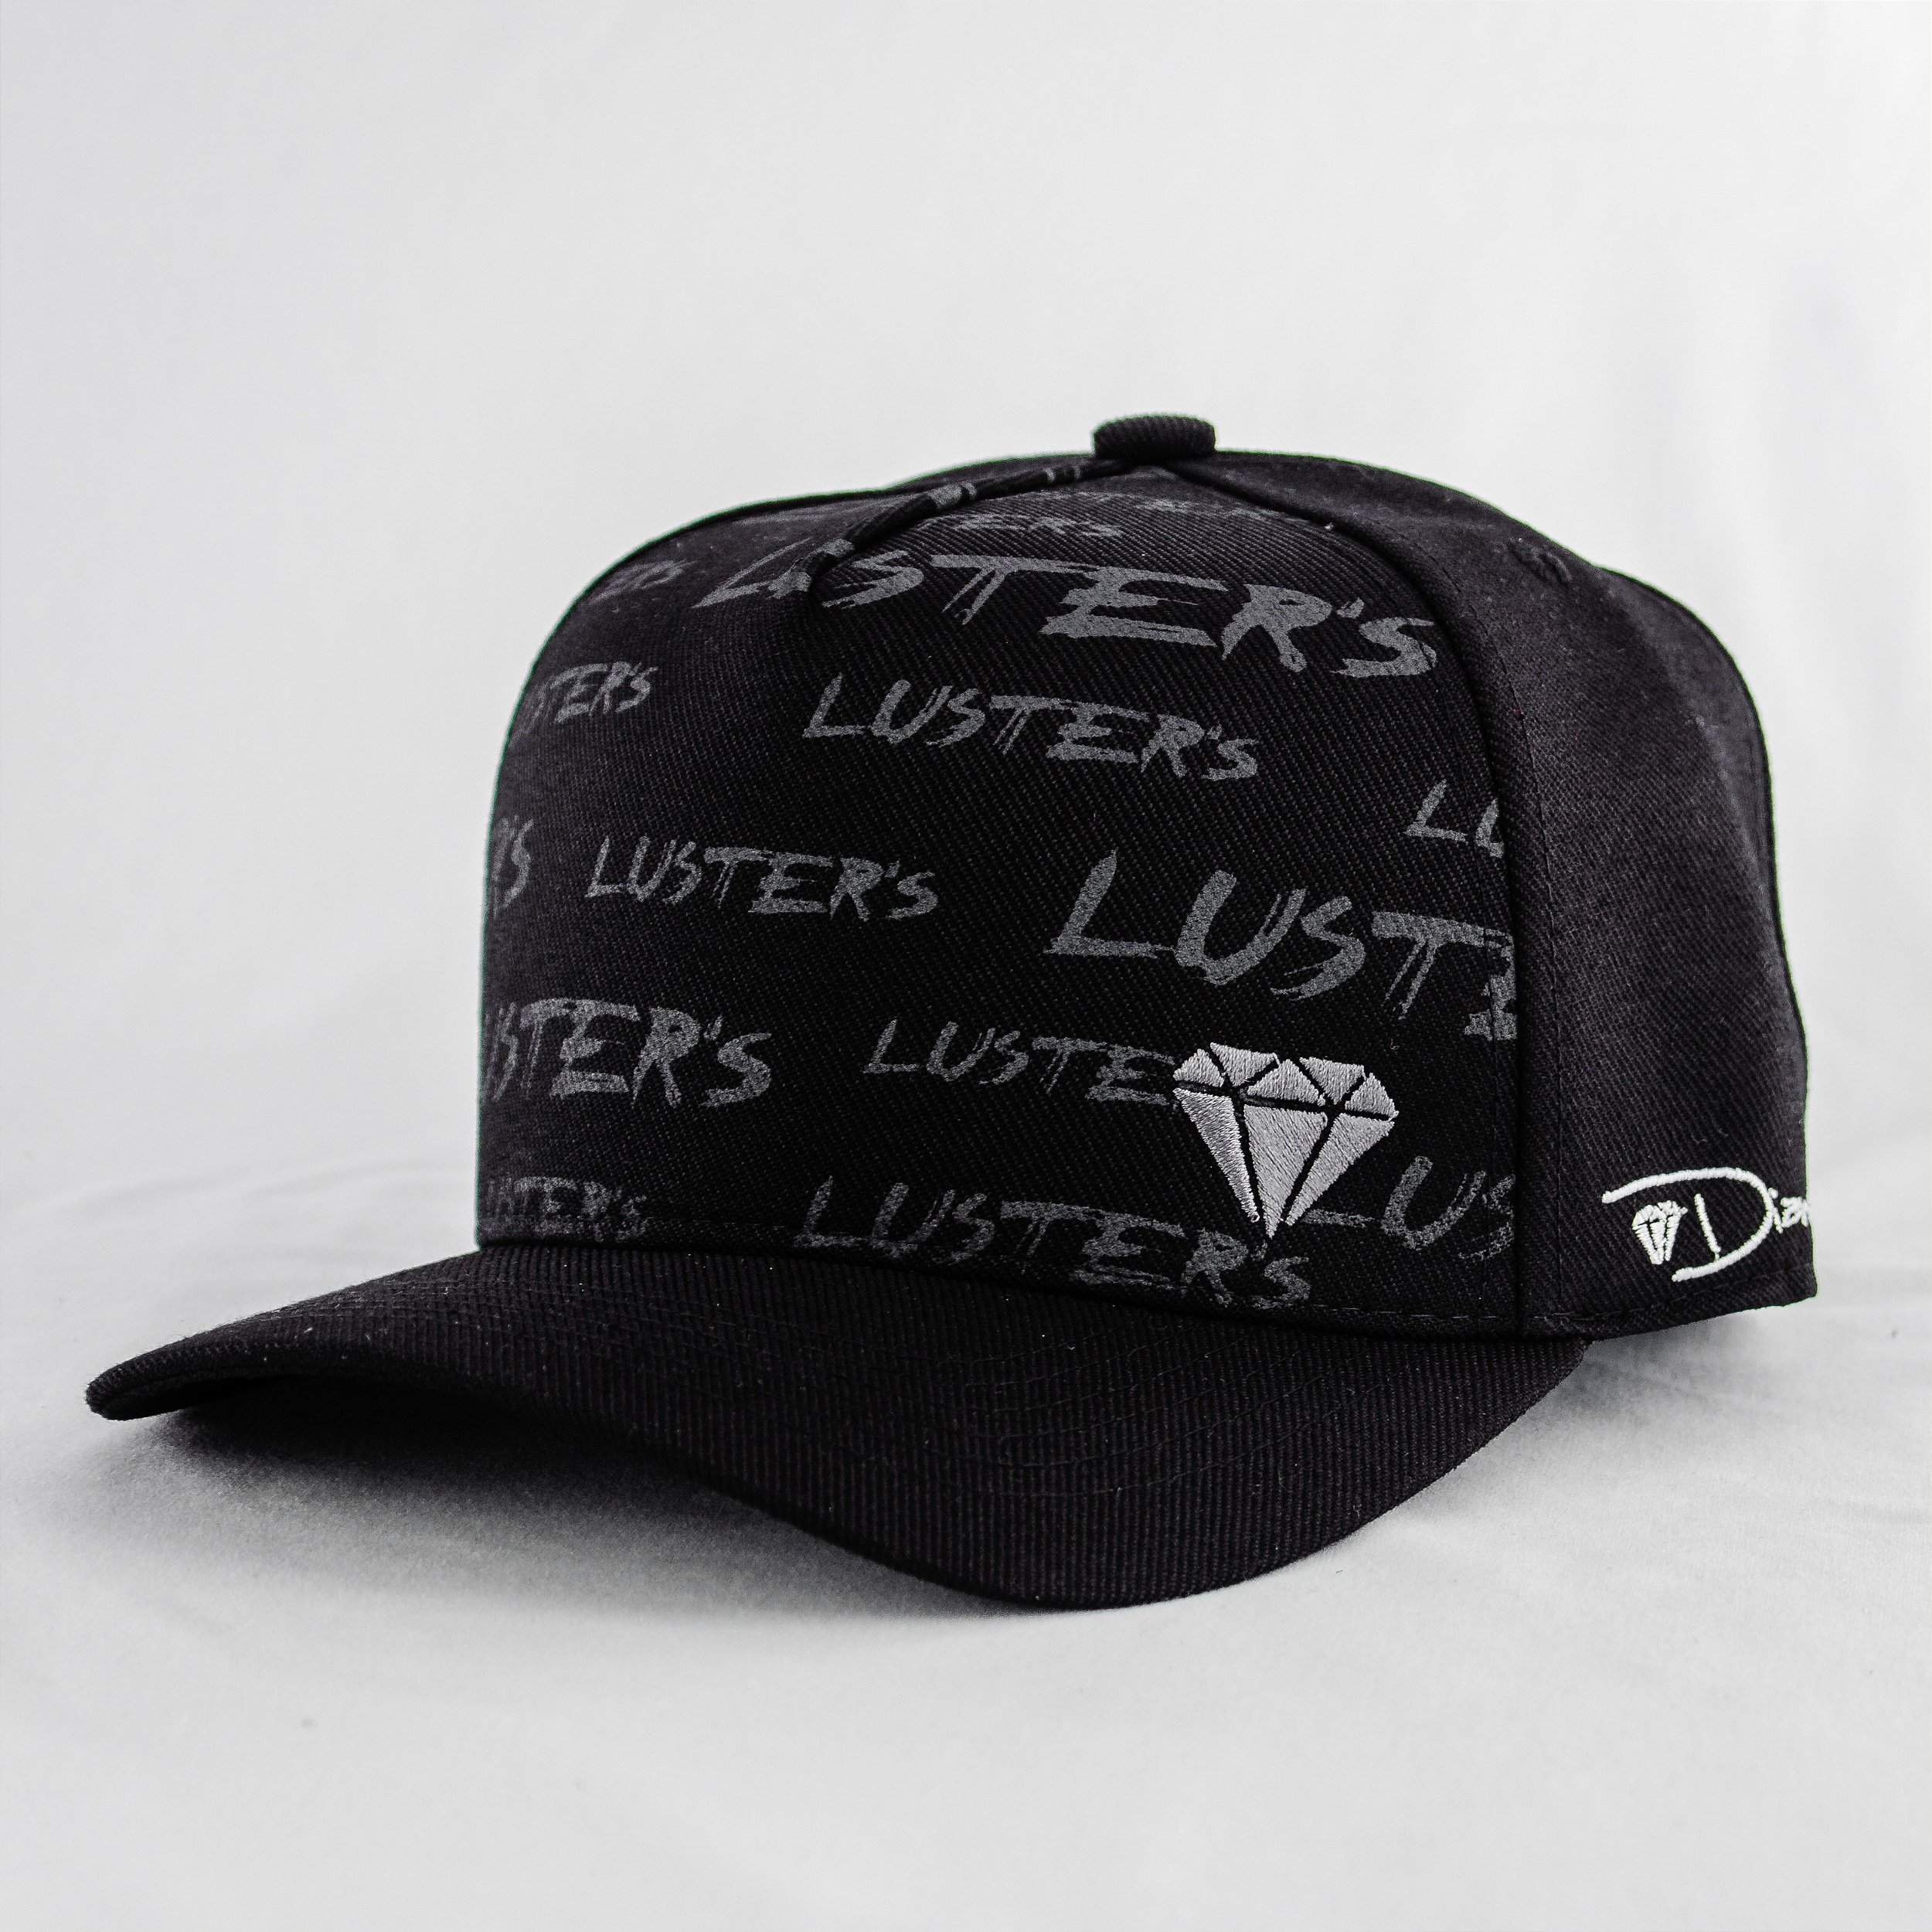 Boné Diamante (Edição Limitada) - Black Diamond - Loja Oficial |Bonés  Luster's